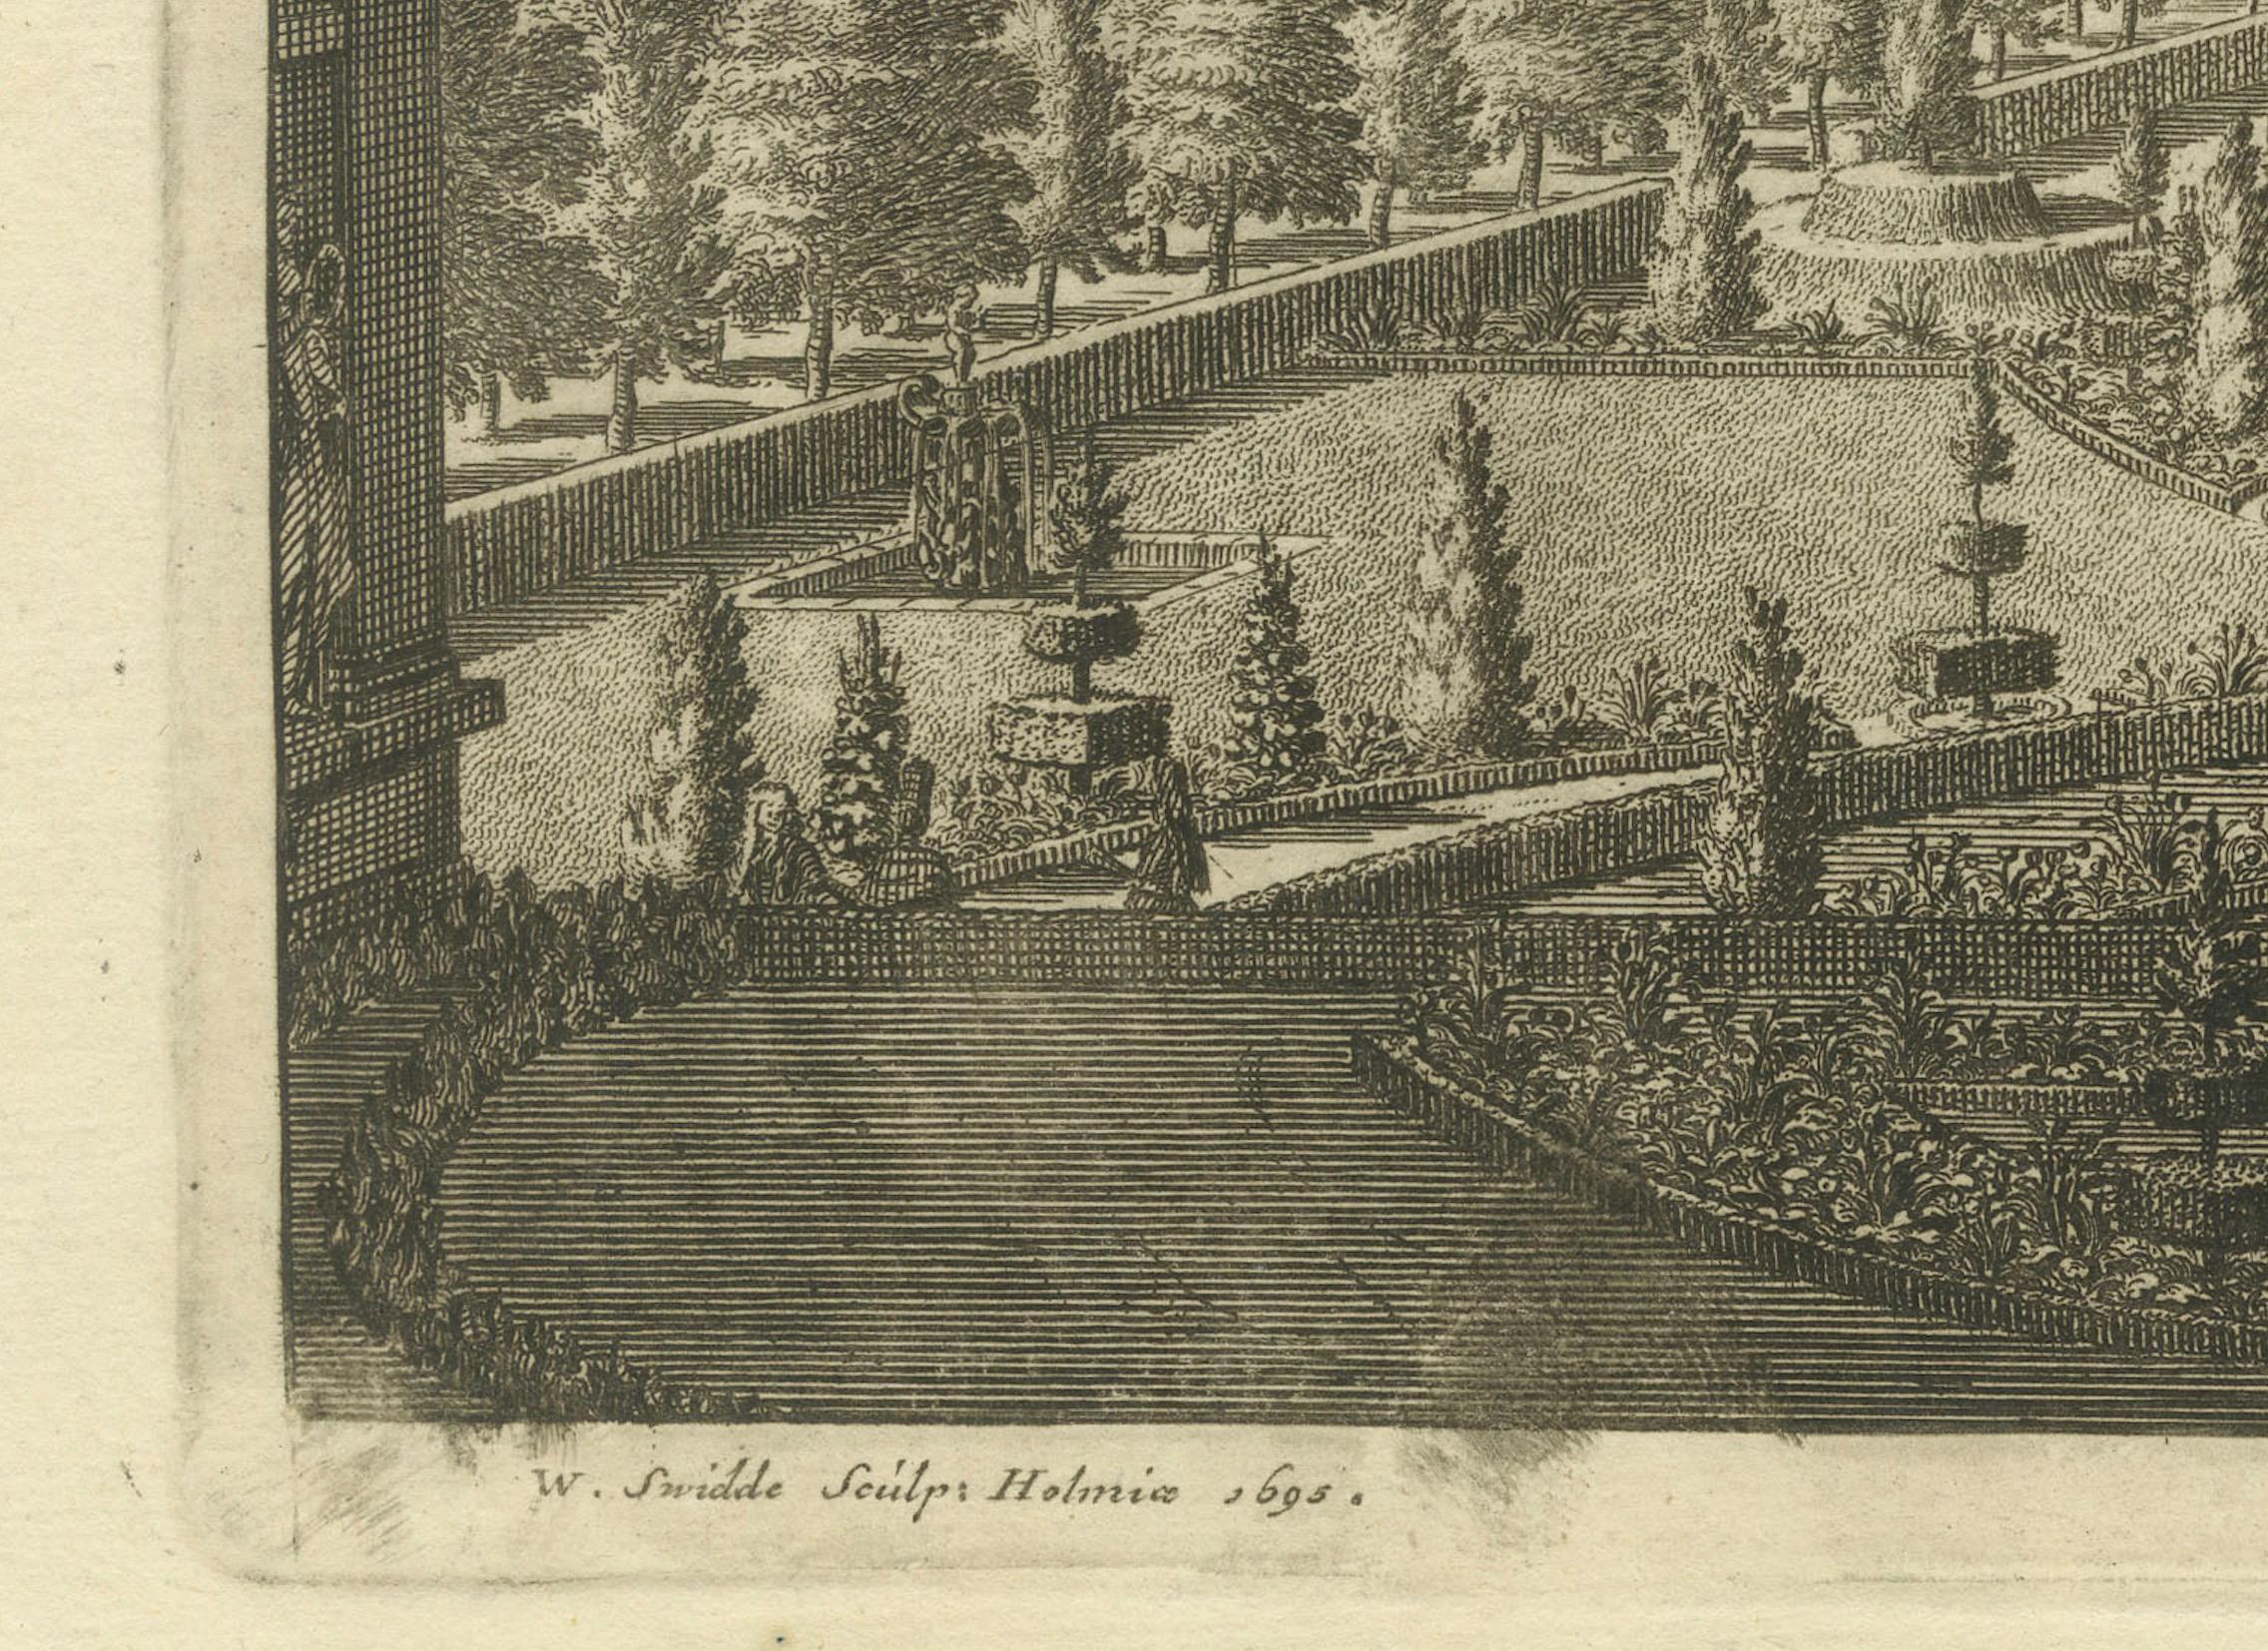 Das Bild ist ein originaler antiker Kupferstich von Swidde aus dem Jahr 1695. Die Szene ist eine sorgfältige Darstellung eines eleganten Palastes und seiner formalen Gärten, die im Barockstil gehalten sind. Die Komposition ist symmetrisch, mit einer